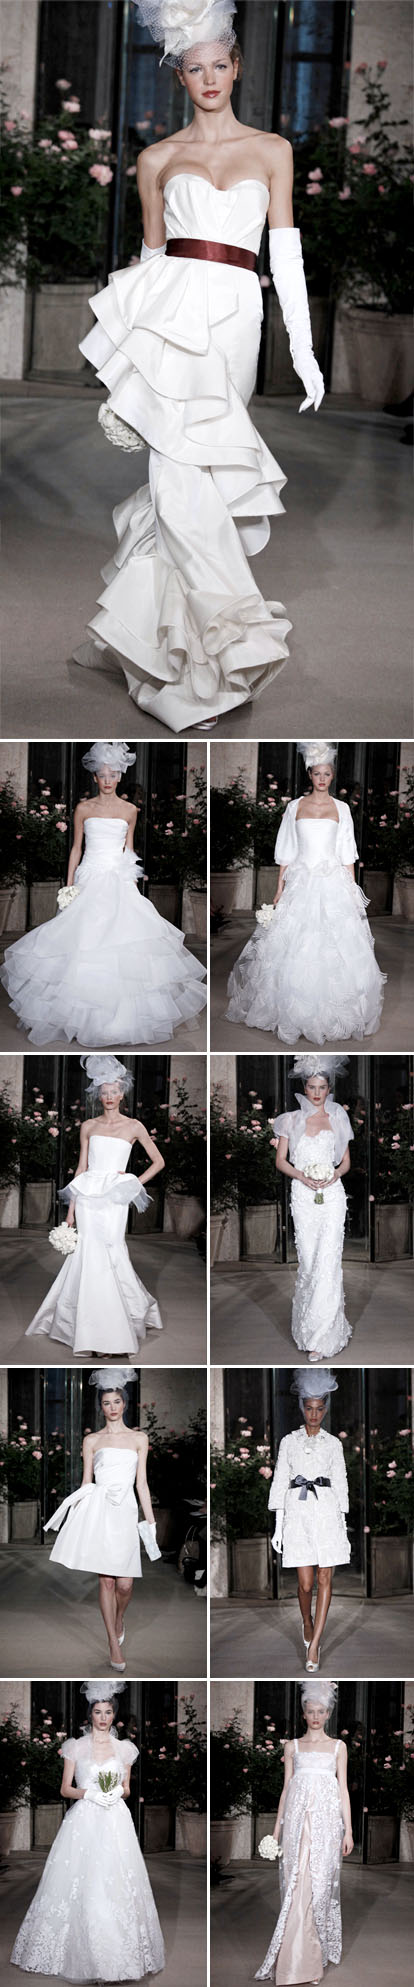 Oscar de la Renta spring 2010 bridal collection, runway highlights